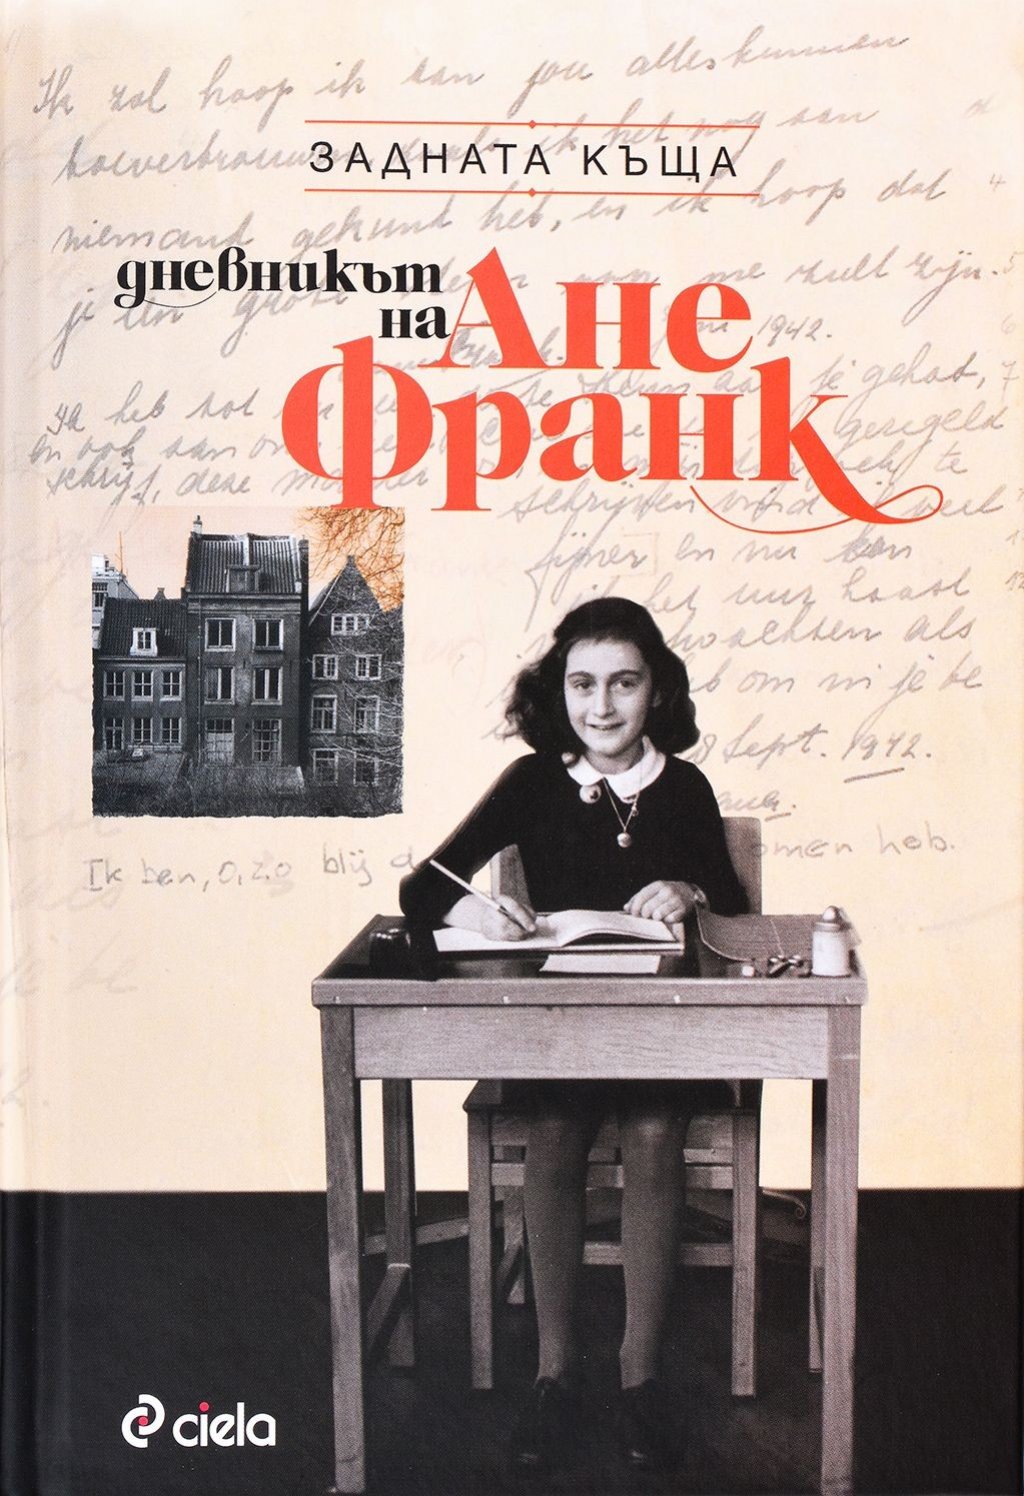 "Дневникът на Ане Франк" е вероятно най-четеният дневник в света. И най-известната книга, писана от дете. И най-превежданата книга от холандски. В него Ане Франк разказва за укриването си в къщата на семейството ѝ в Амстердам, за ареста им и пребиваването им в концлагер. Ане умира в концлагера Берген-Белсен два месеца преди освобождението на Холандия.